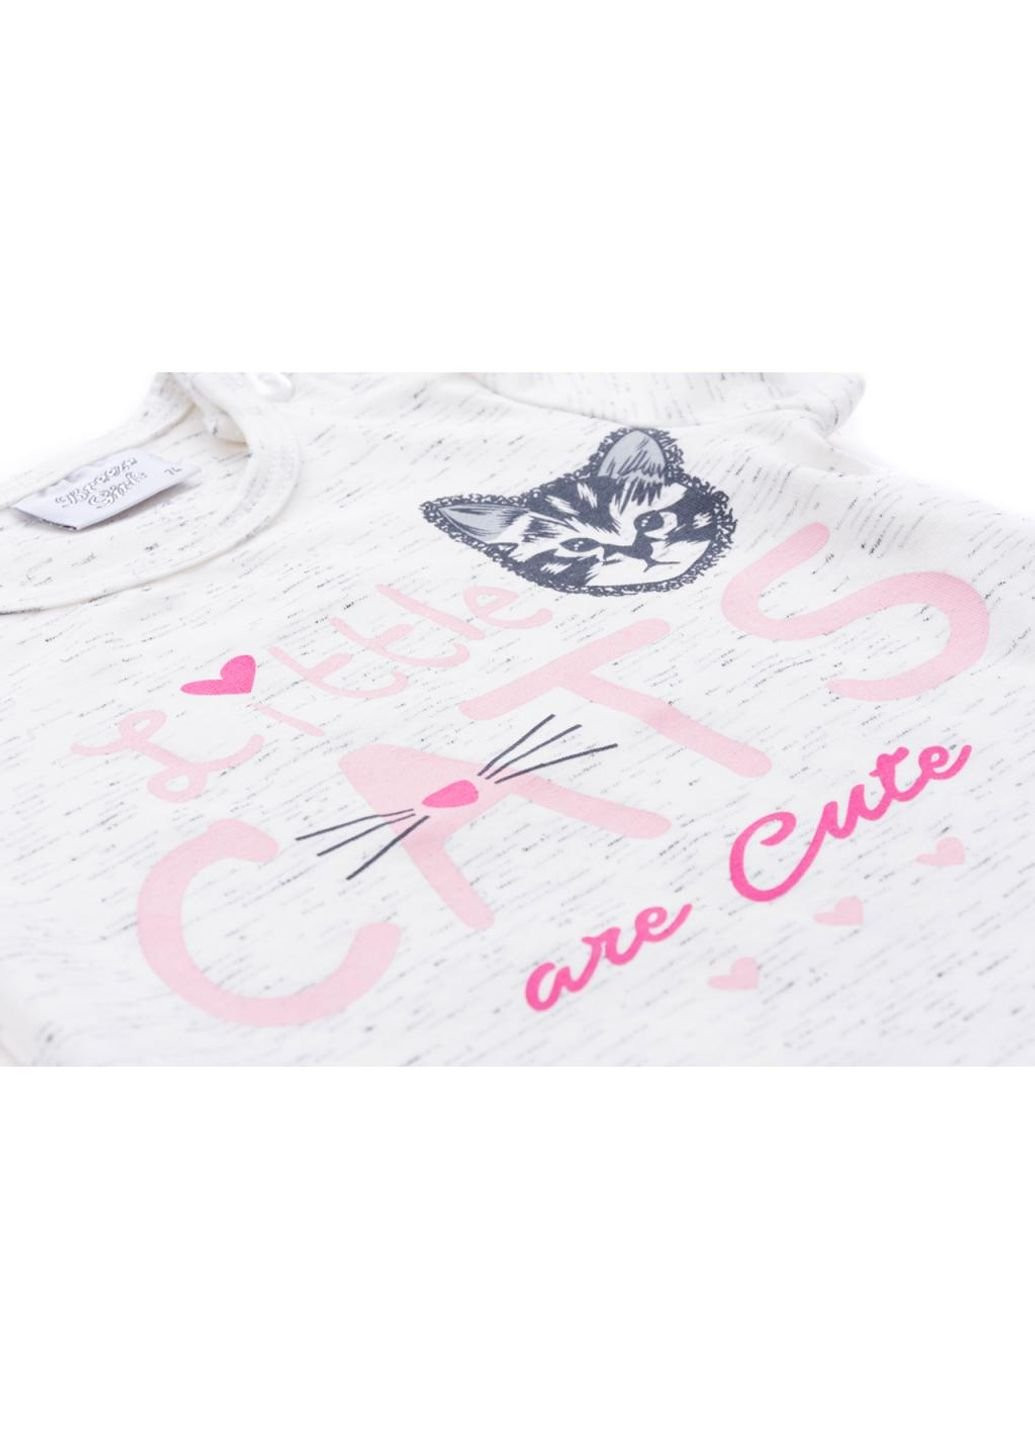 Комбинированный летний набор детской одежды футболка с котиком и штанишки с кармашками (8983-86g-cream) Breeze